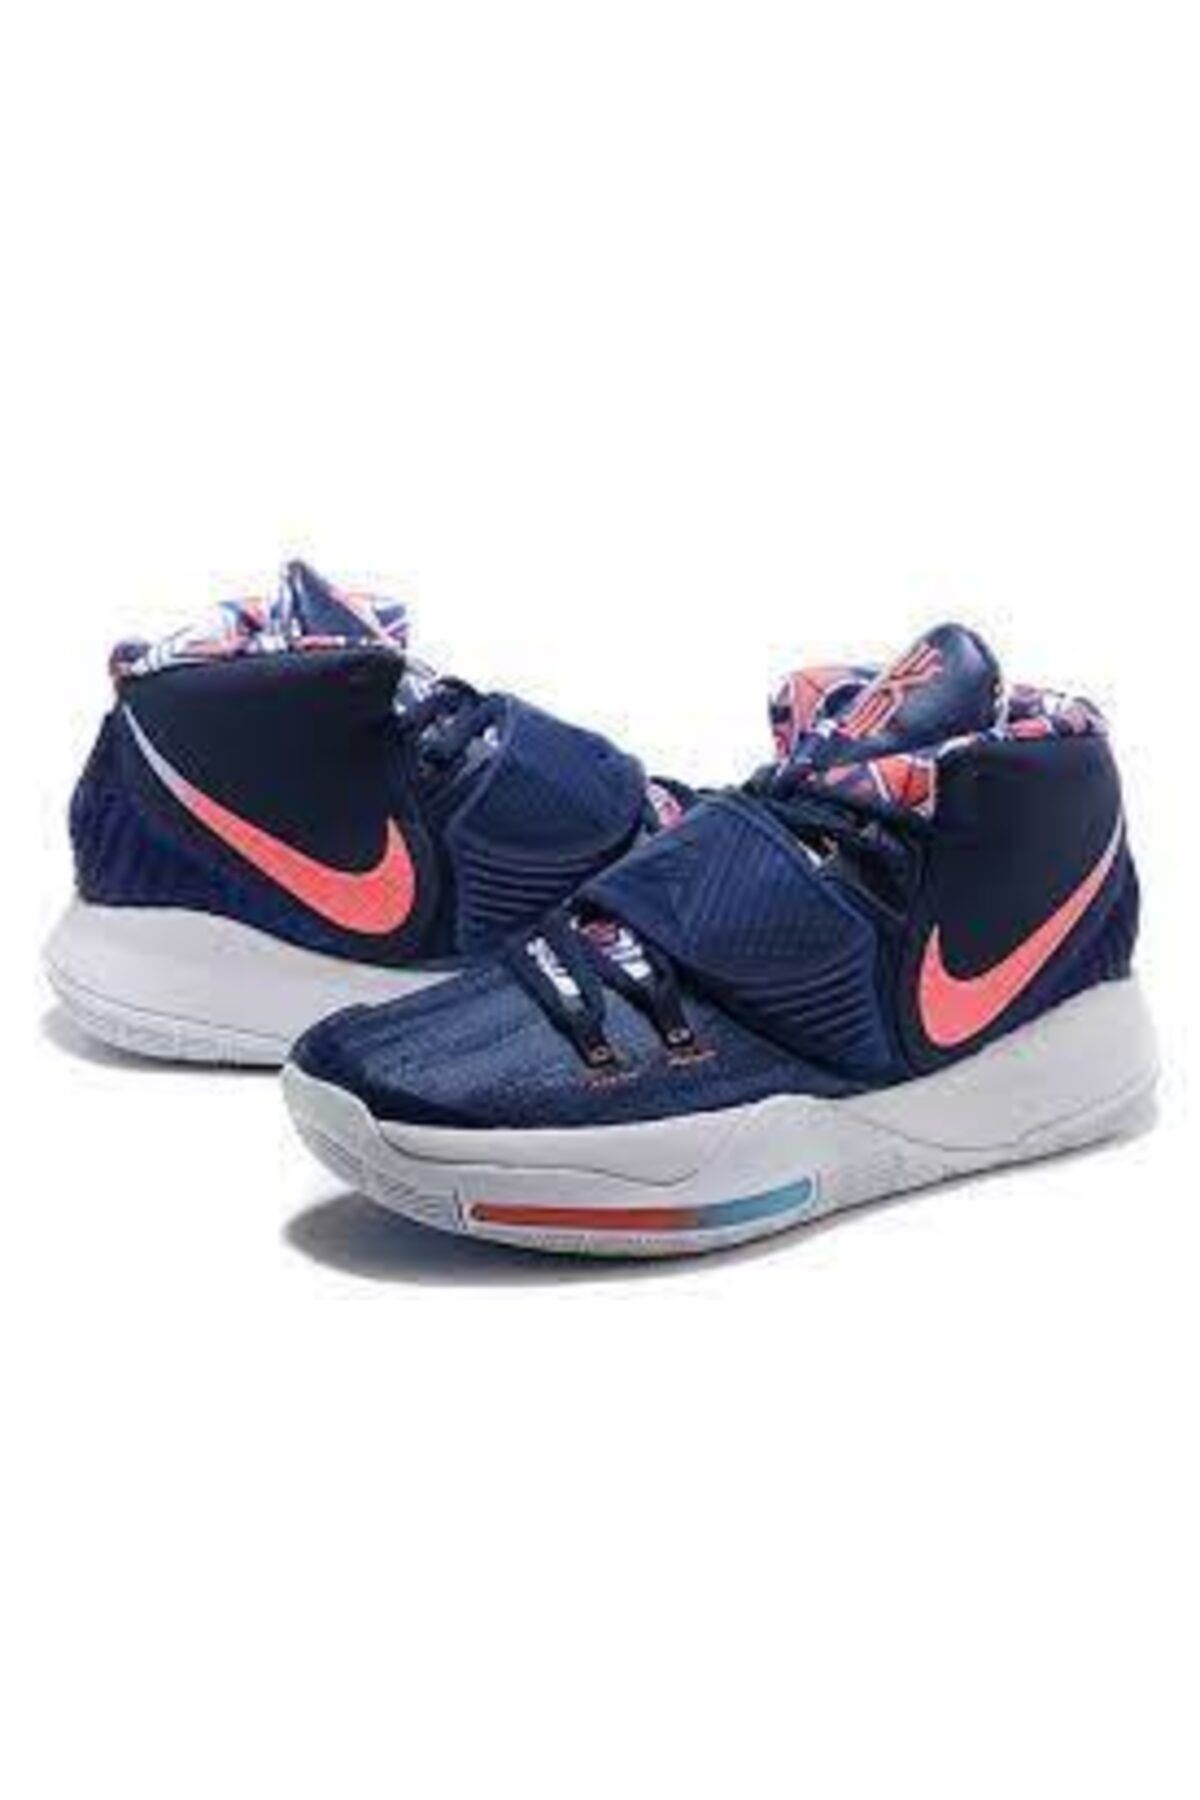 Nike Kyrie 6 Bq4630-402 Spor Ayakkabı